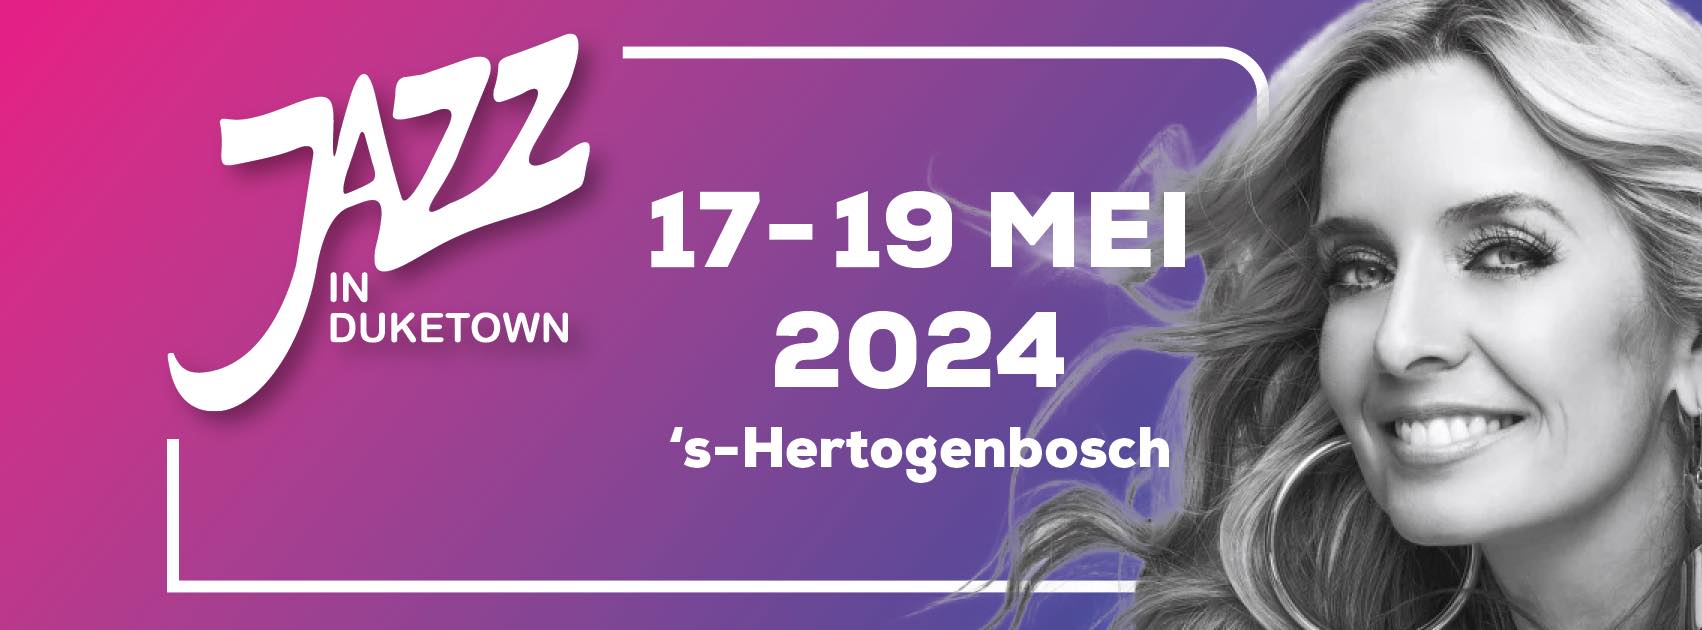 50 JAAR JAZZ IN DUKETOWN   , s’Hertogenbosch 17/18/19 MEI 2024